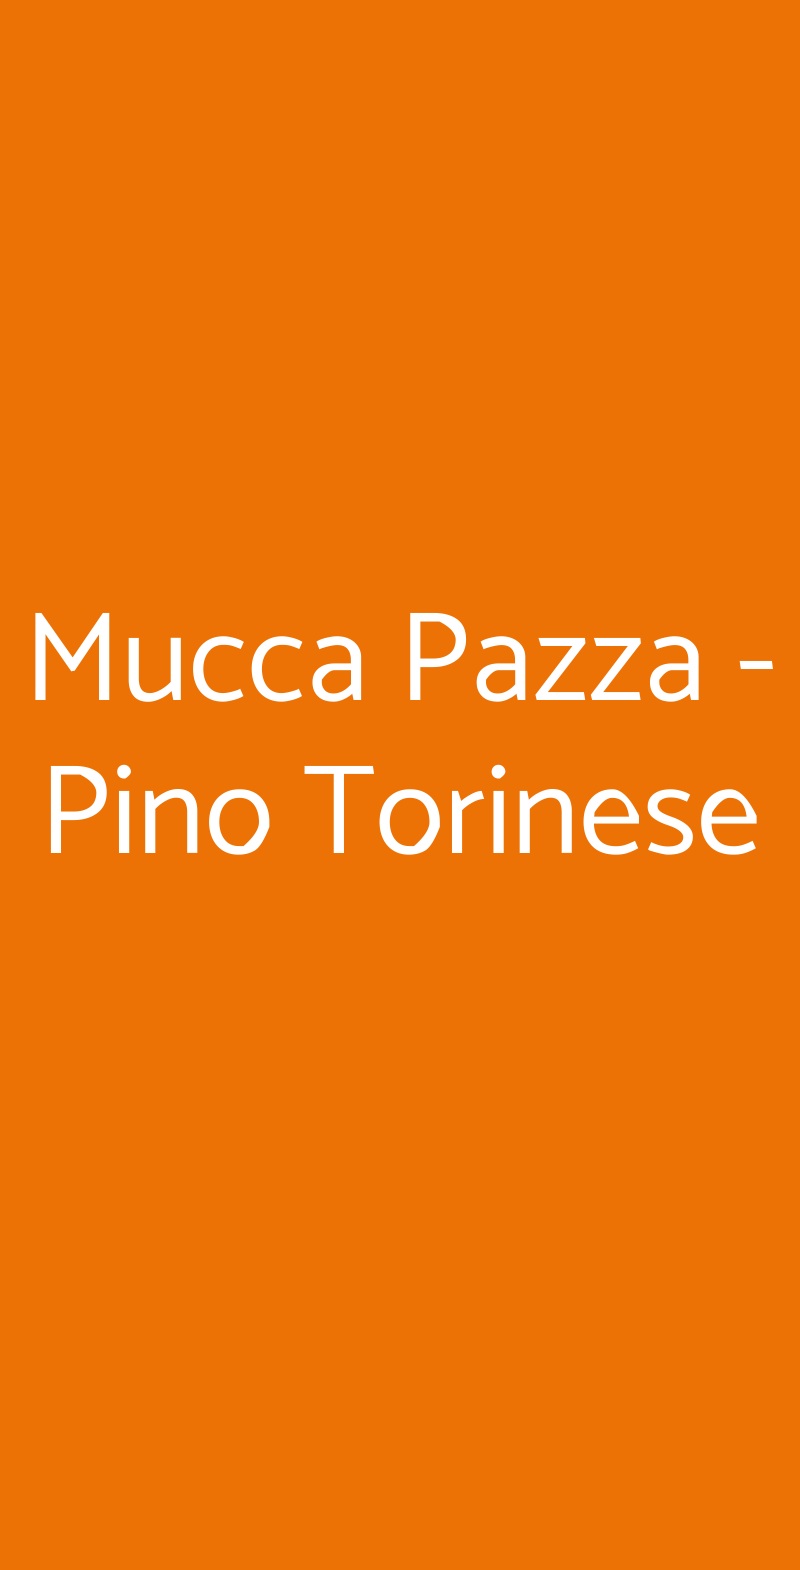 Mucca Pazza - Pino Torinese Torino menù 1 pagina